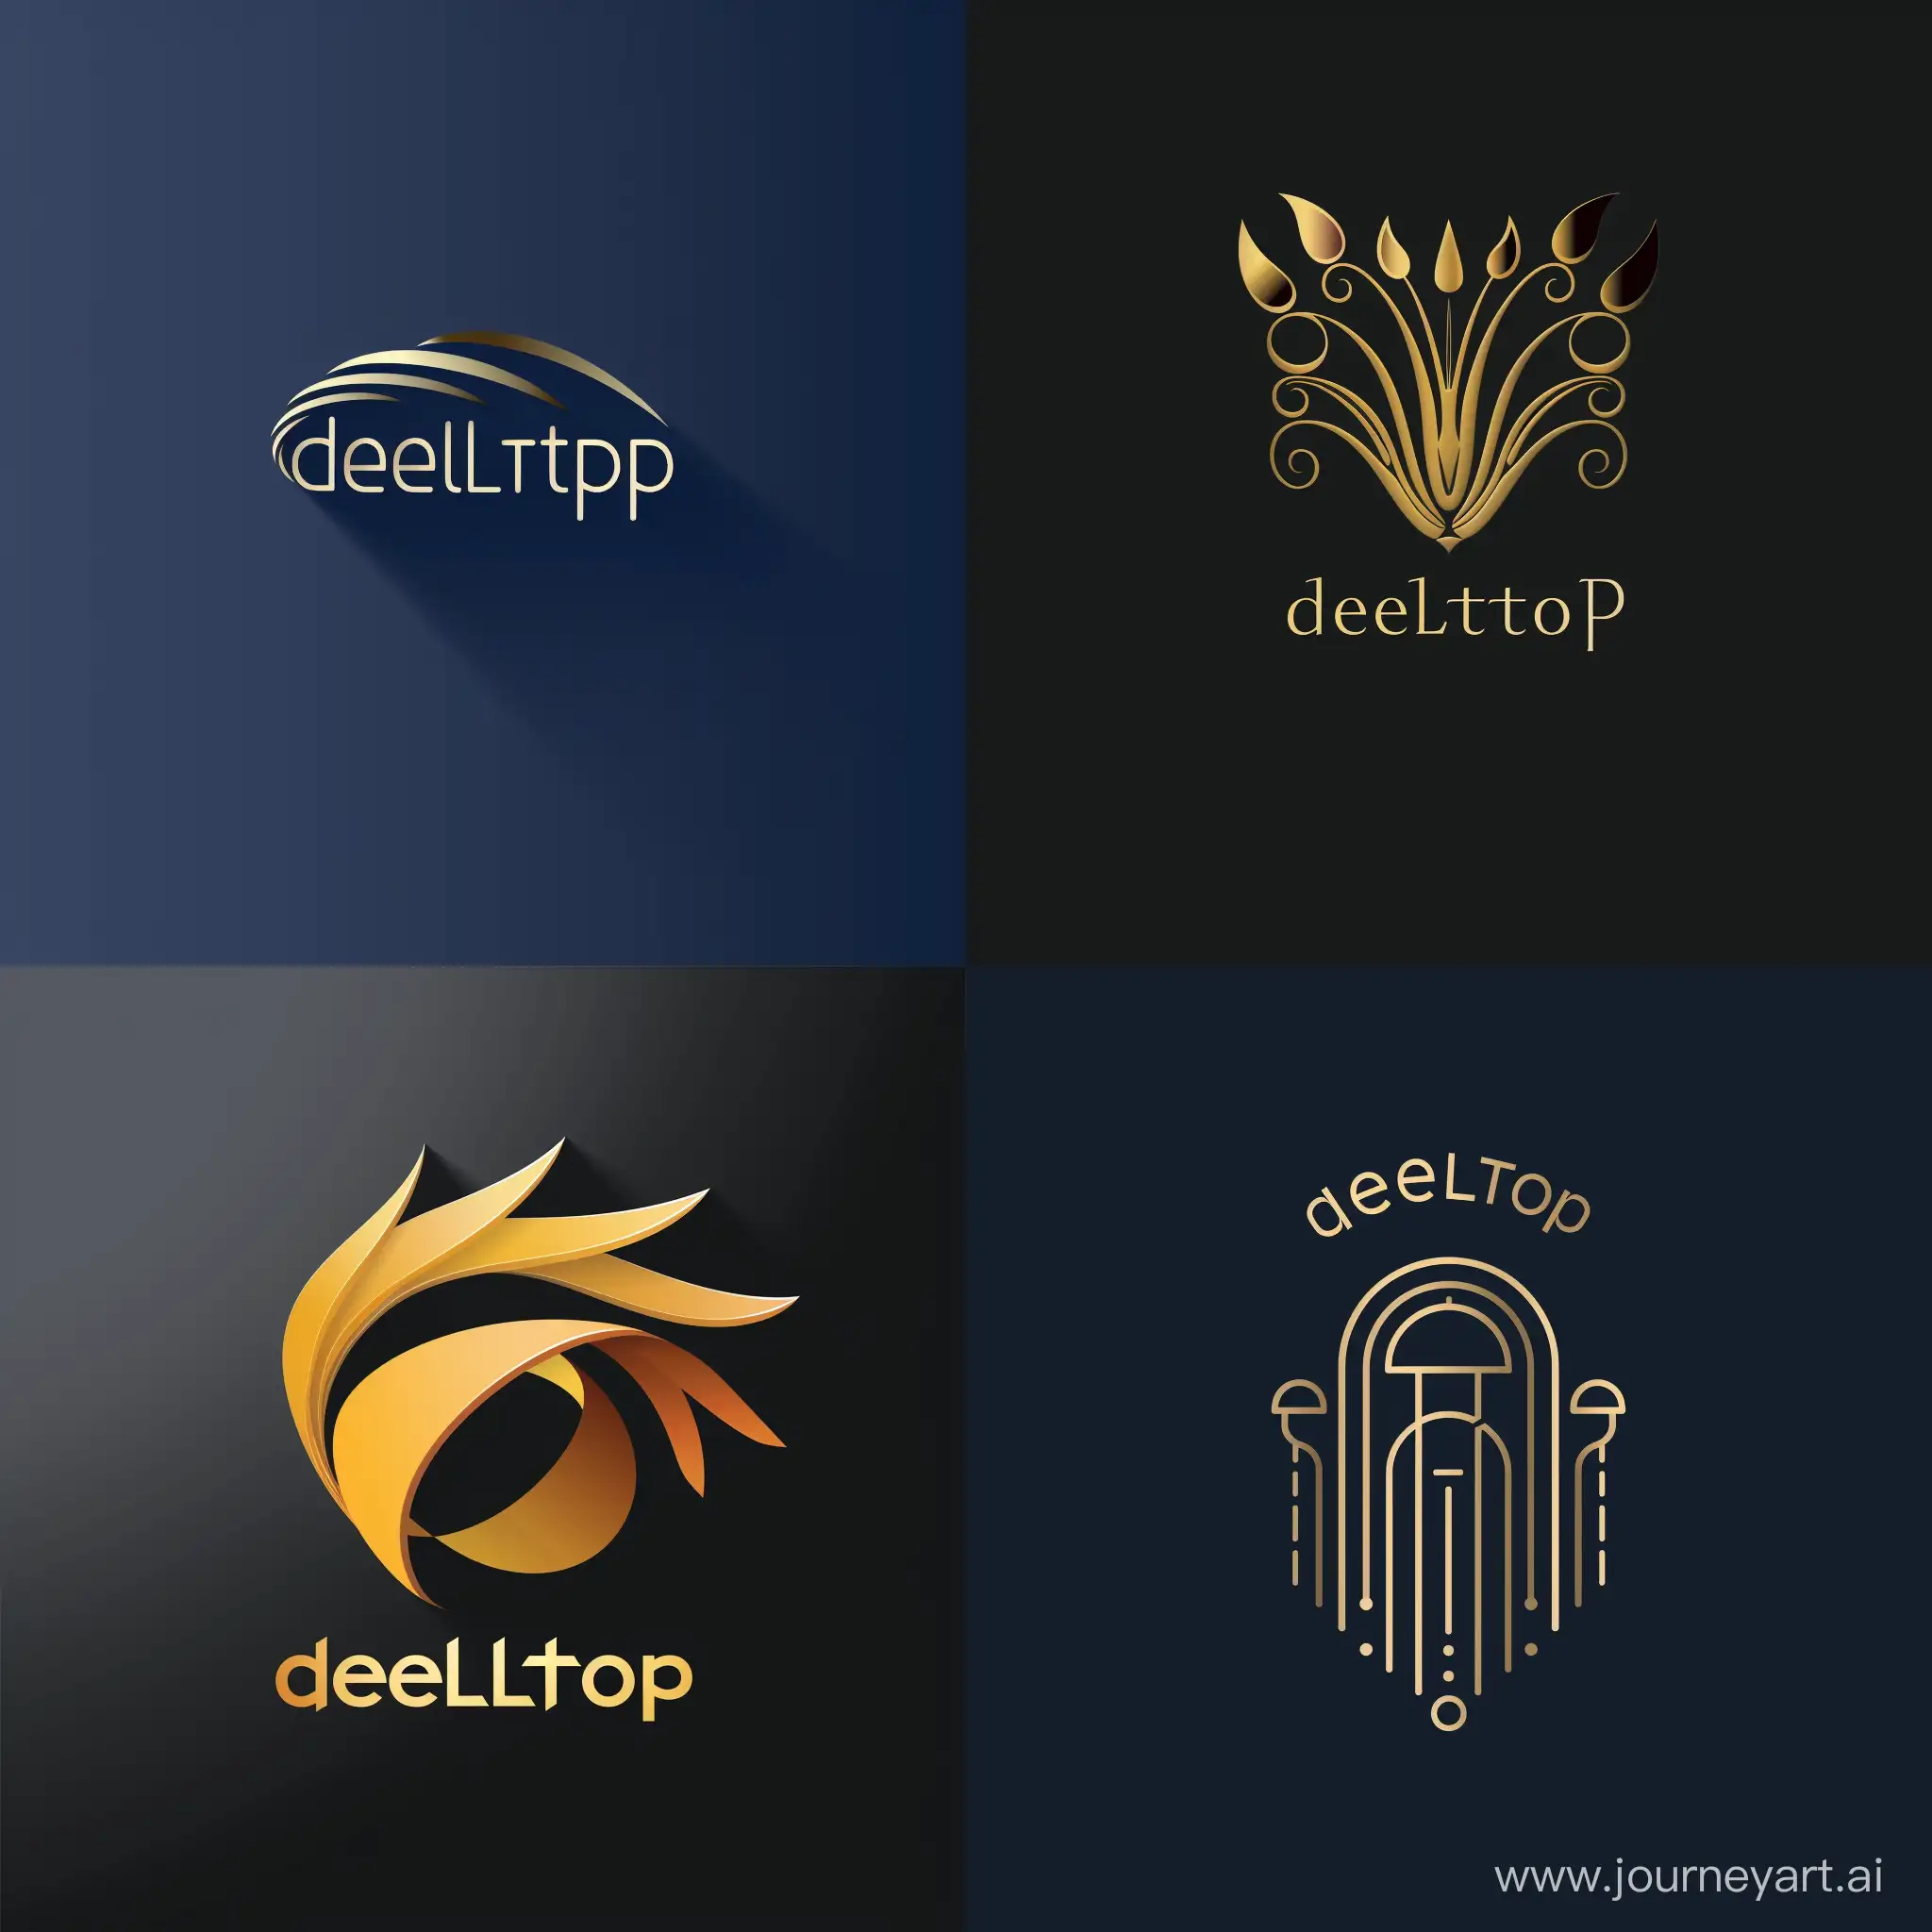 Delltopia-Logo-Design-Vibrant-and-Symmetrical-Identity-for-Brand-Recognition